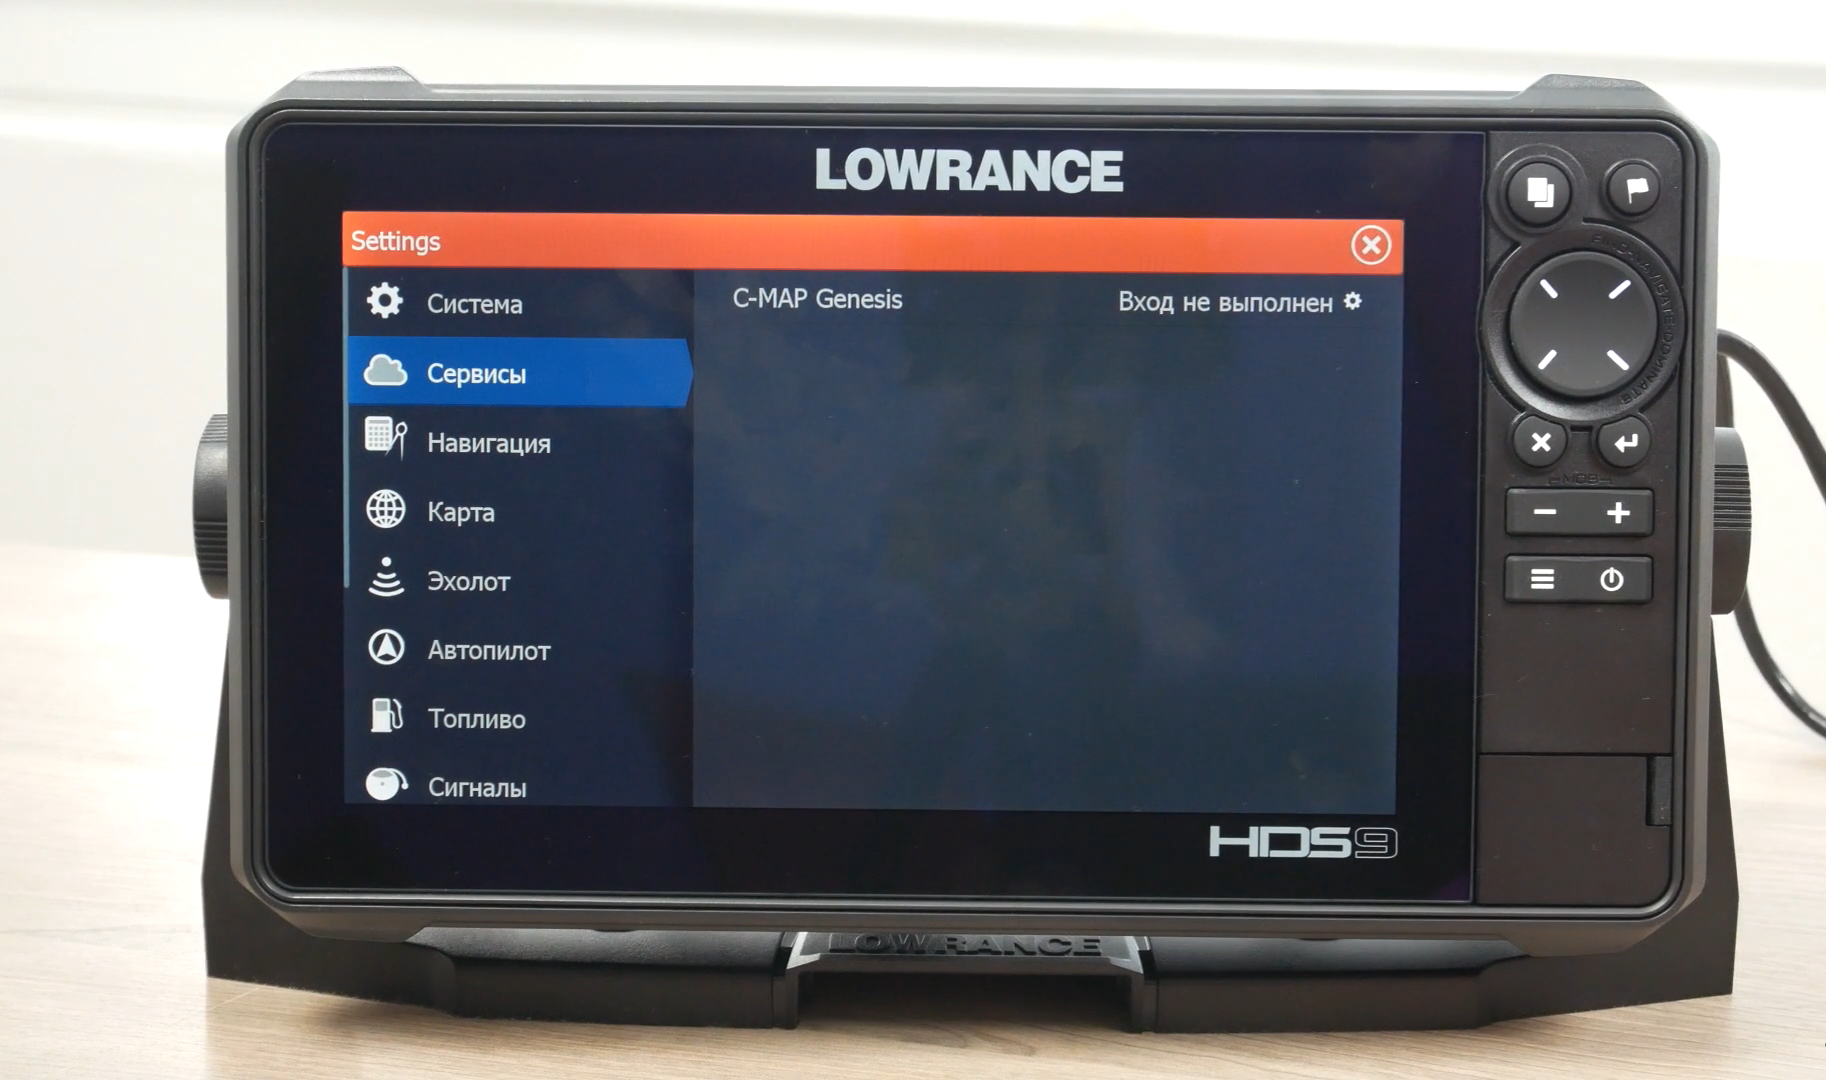 Lowrance fs 9 купить. Lowrance HDS 9 Live. Эхолот Lowrance HDS-9 Live. Lowrance 120-37. Lowrance Elite fs9 карта.